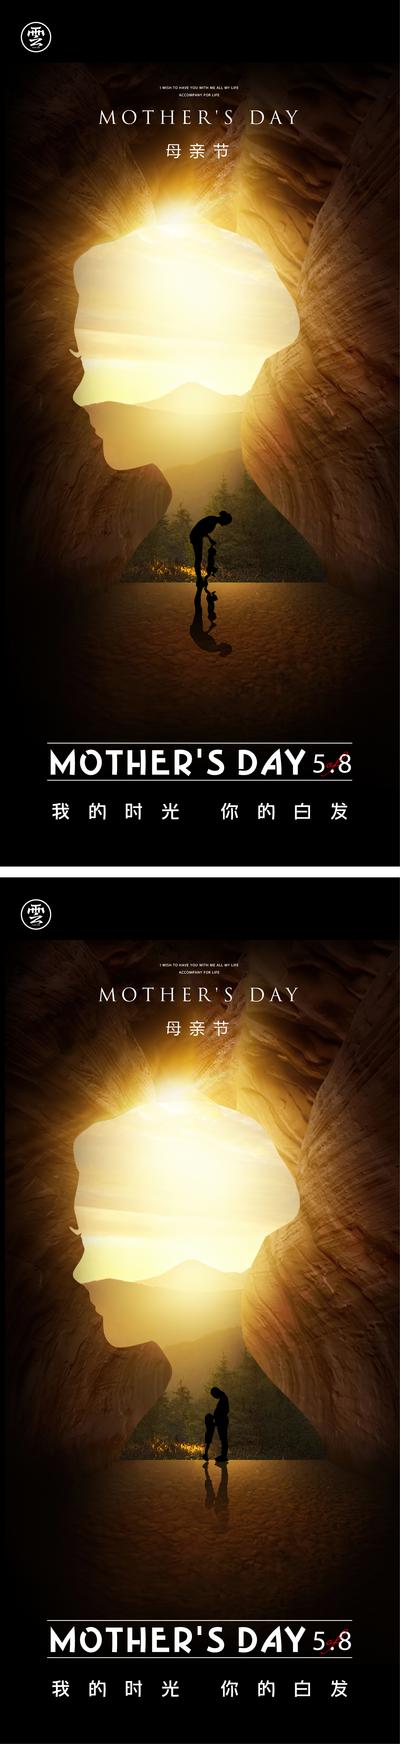 南门网 海报 公历节日 母亲节 母女 母子 剪影 创意 山 光线 阳光